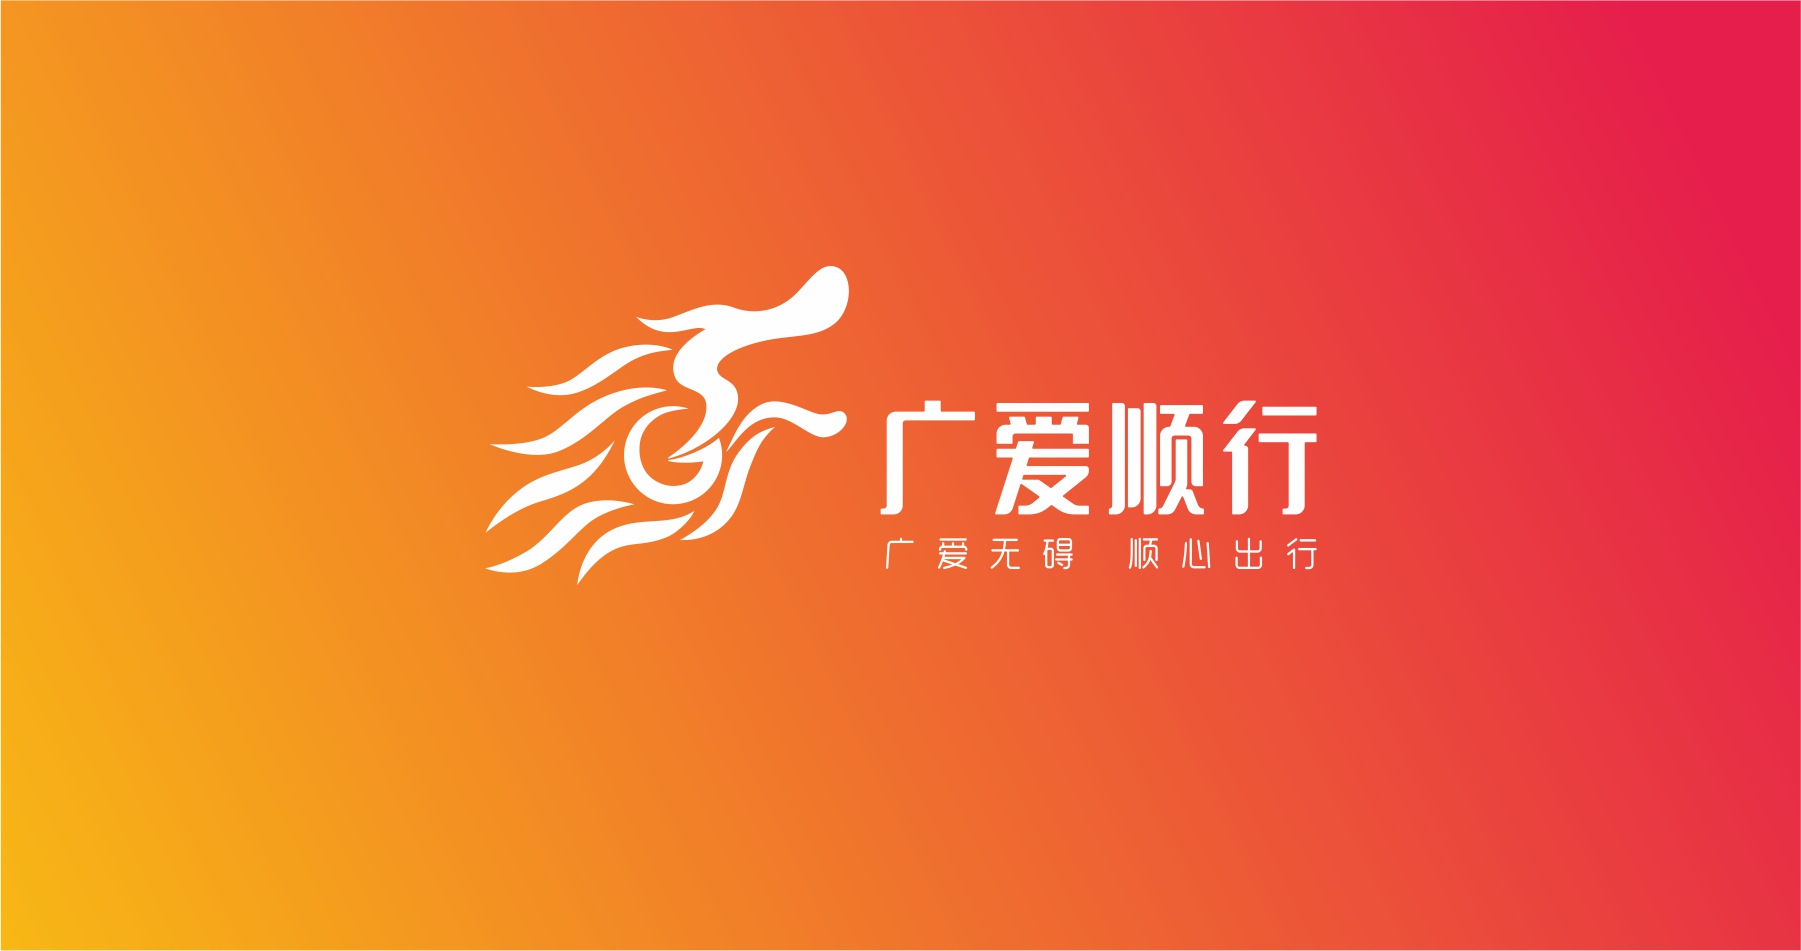 广爱顺行（狮子会）公益形象设计创意logo